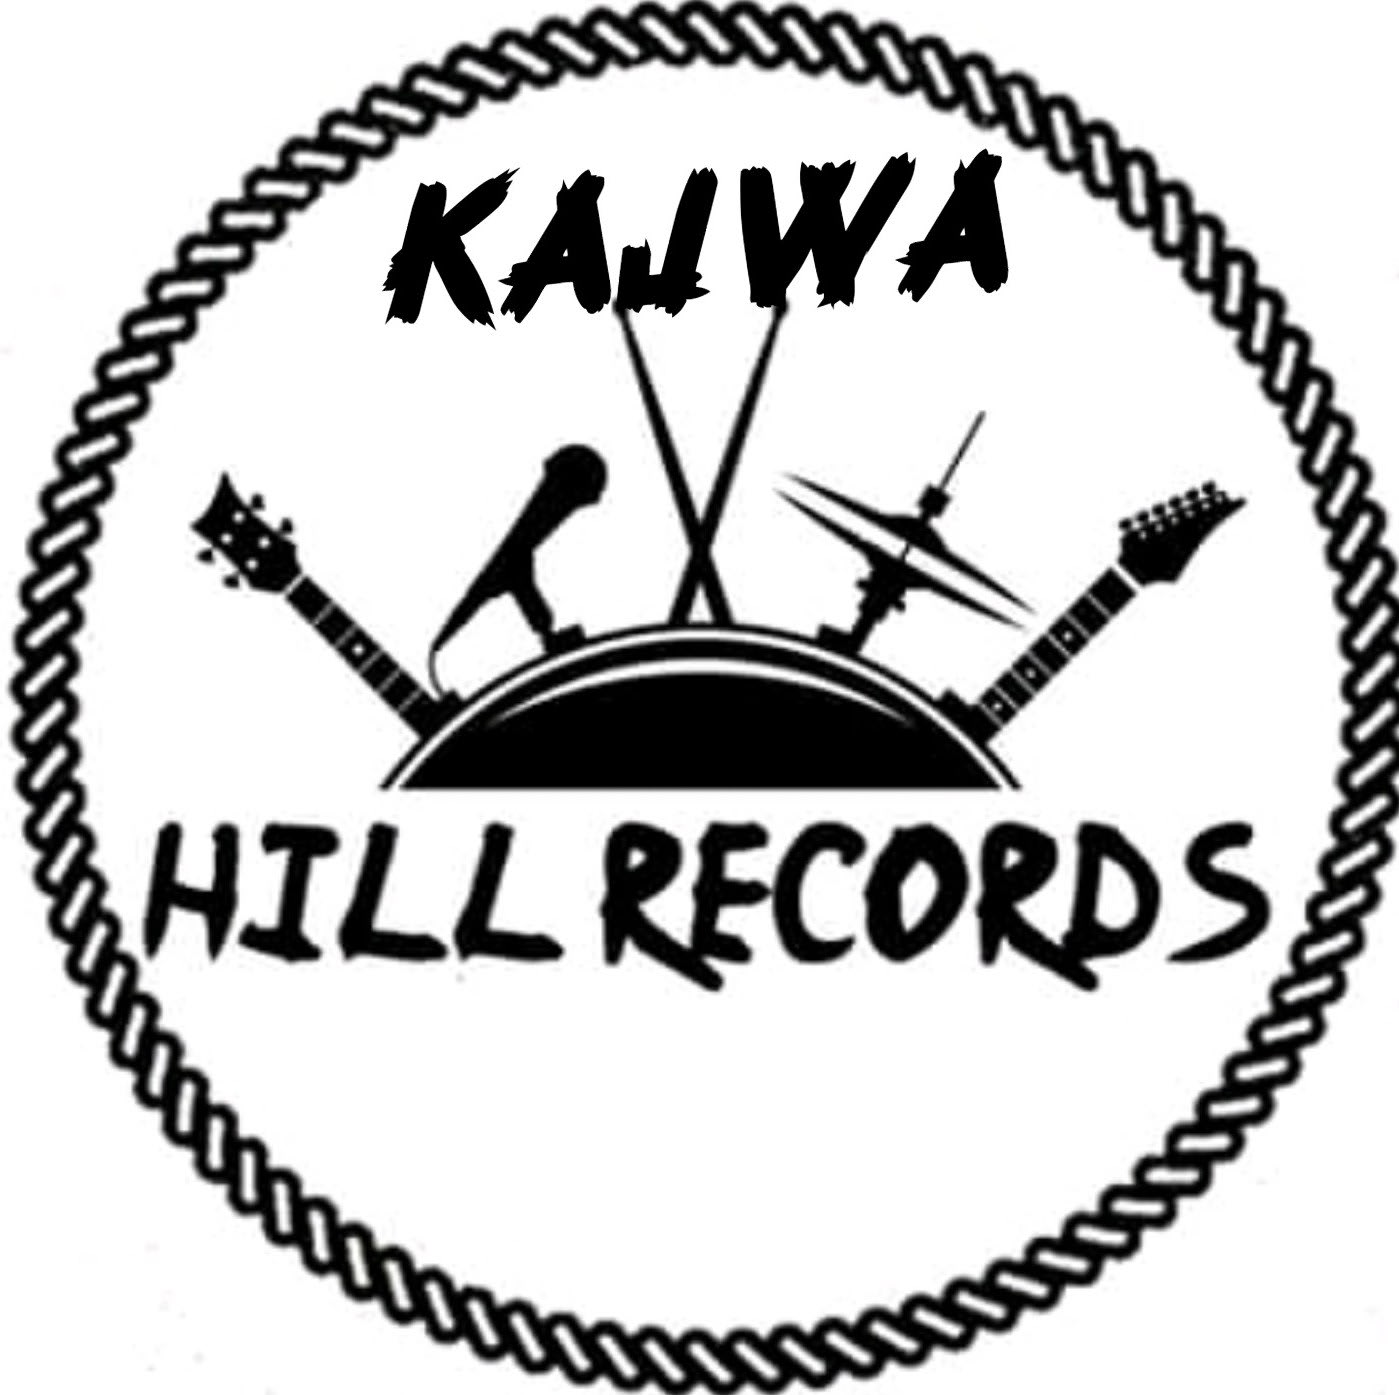 Kajwa Hills Recording